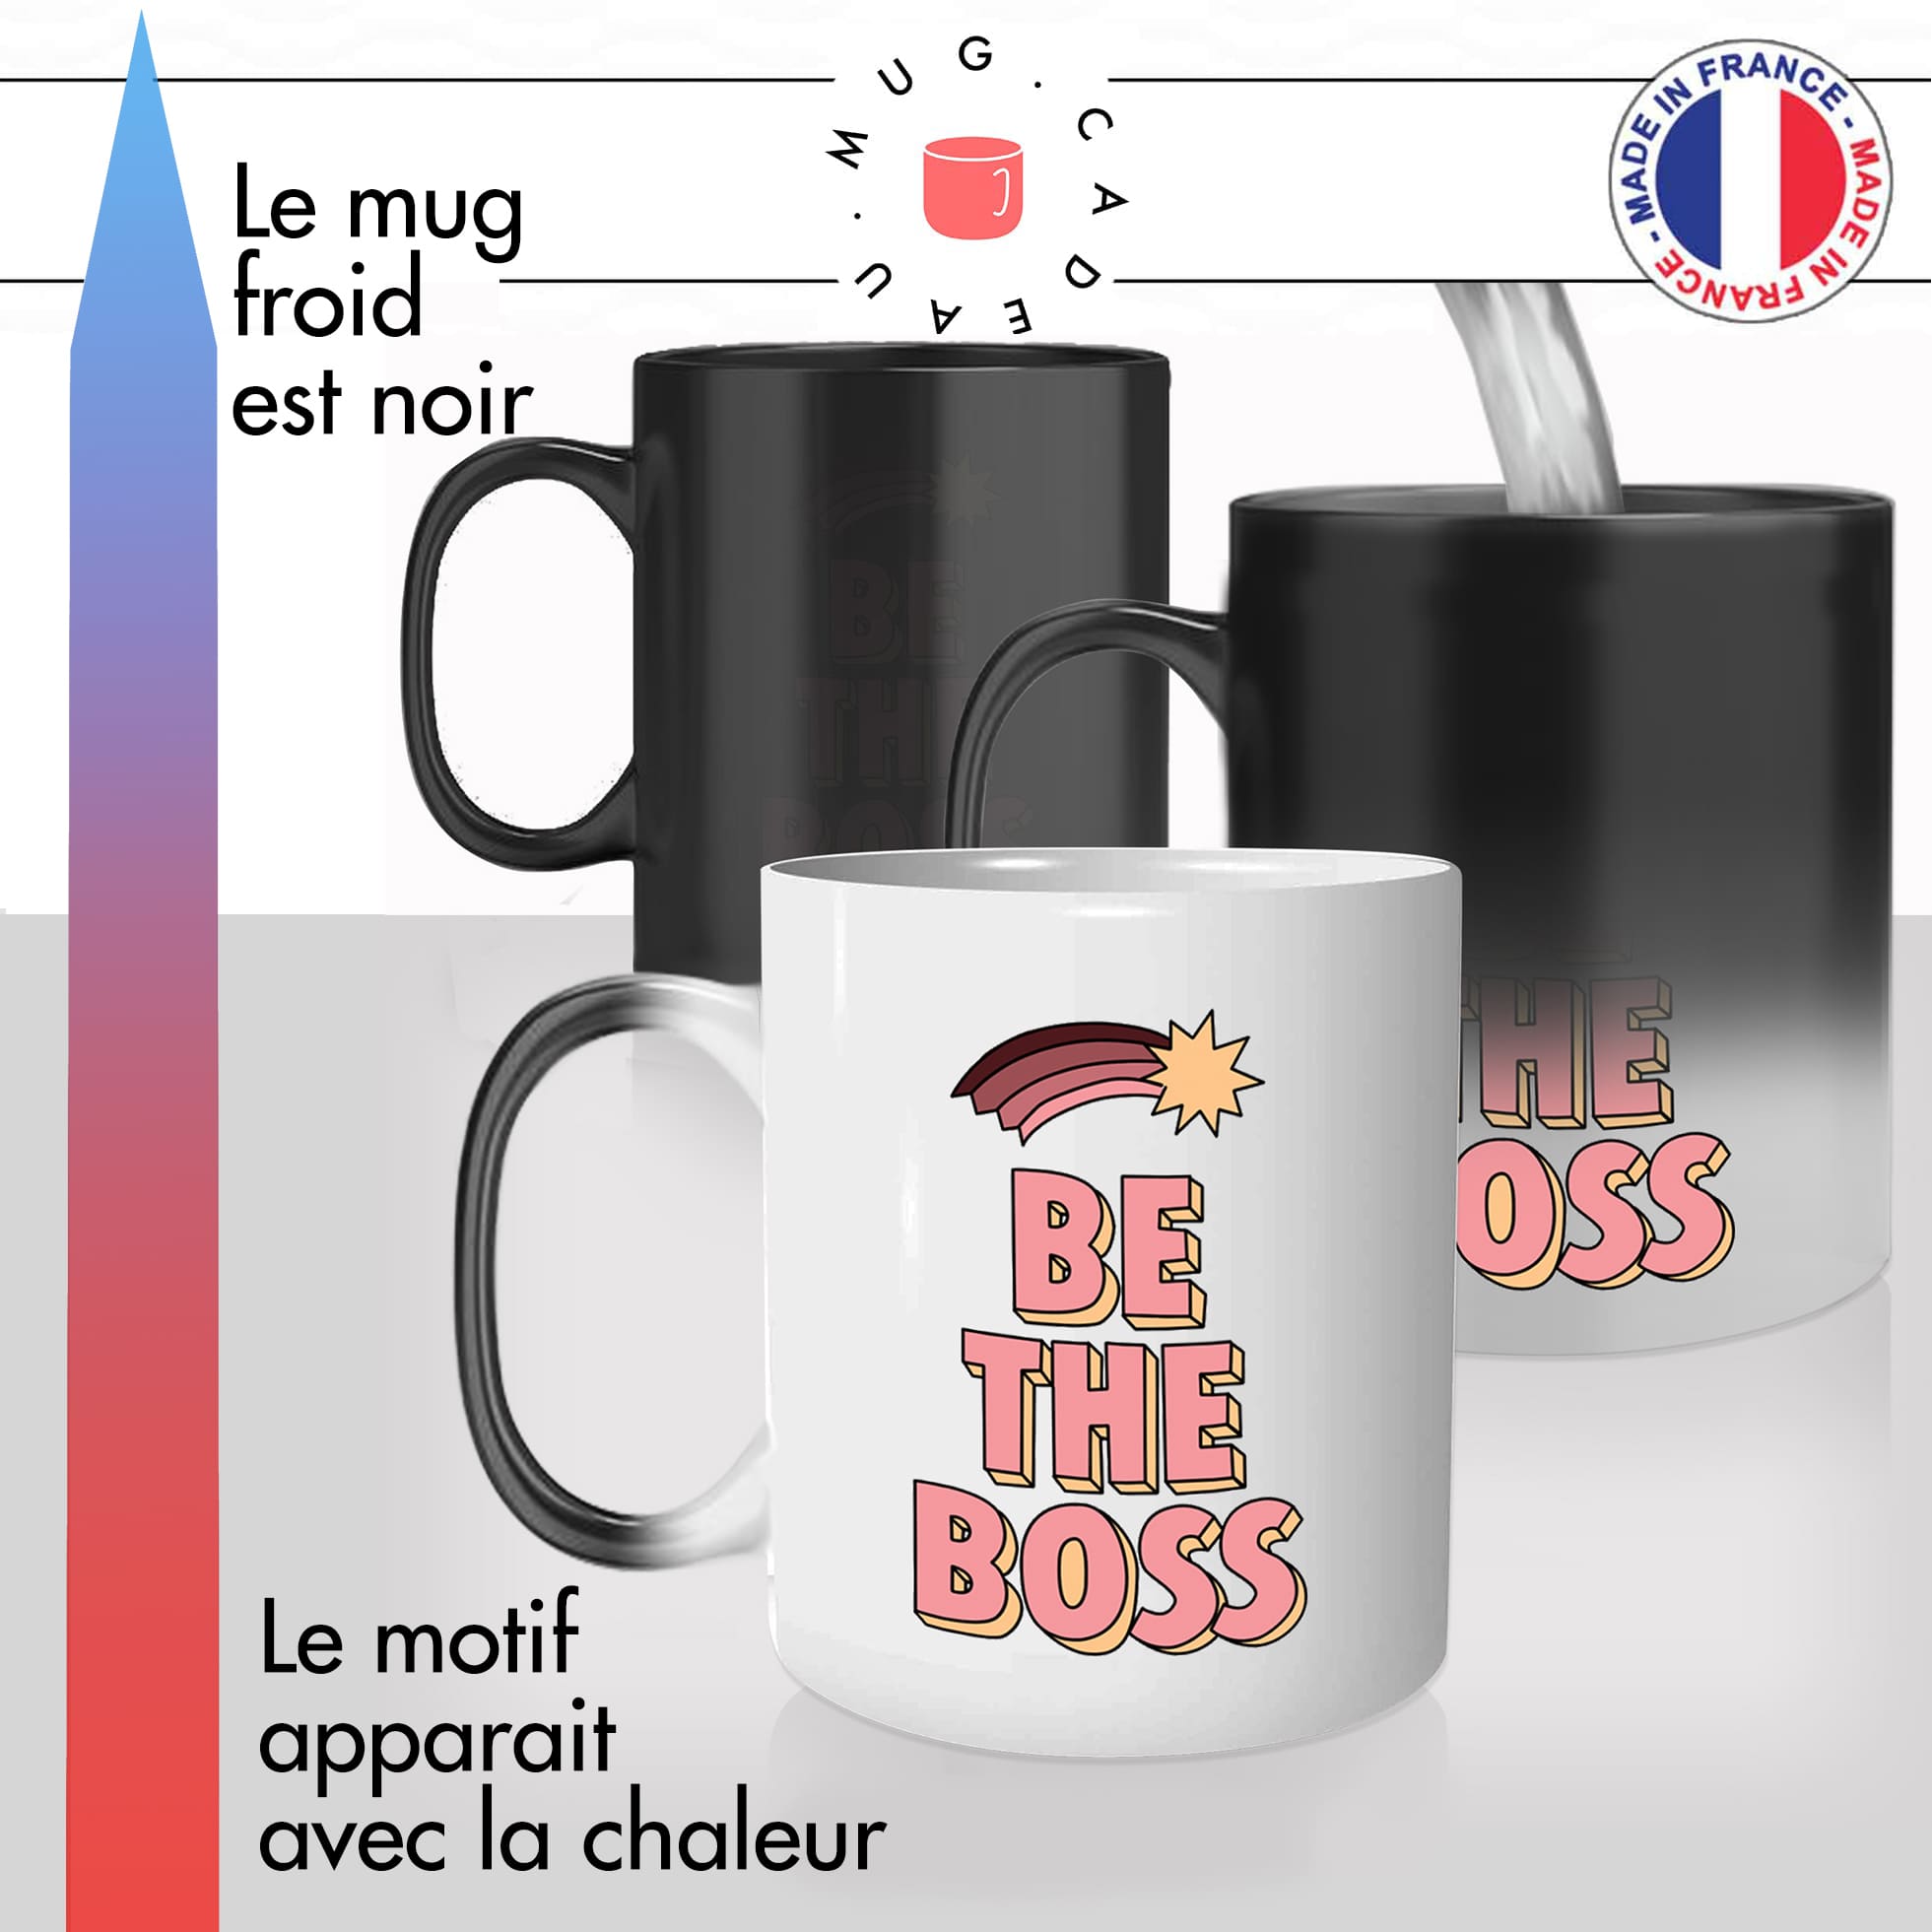 mug magique thermoréactif thermo chauffant personnalisé metier be the boss patronne rose femme entrepreneur offrir idée cadeau original